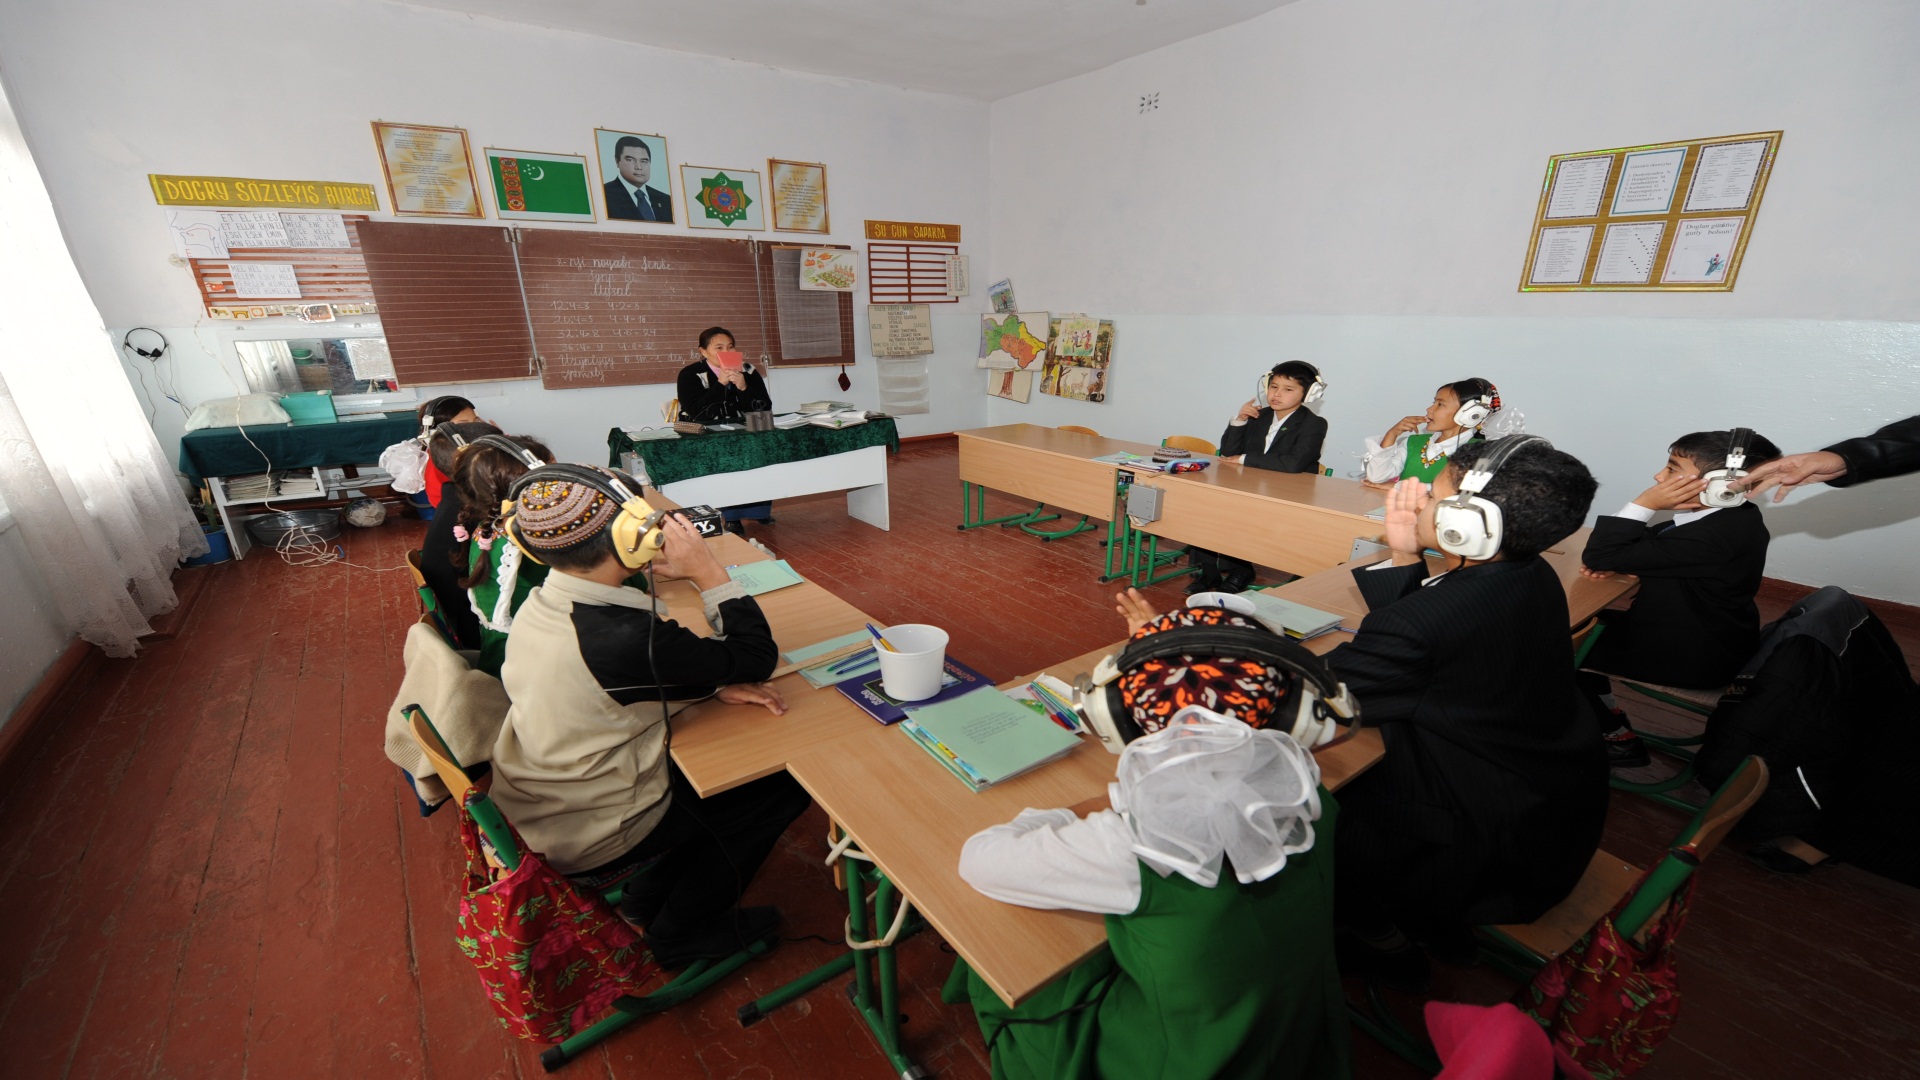  【孩子的笑臉】               土庫曼斯坦，阿什哈巴德地區聽力與語言障礙學校，中國石油人給師生們送來了聖誕禮物並一起過聖誕節。               隱藏文字說明